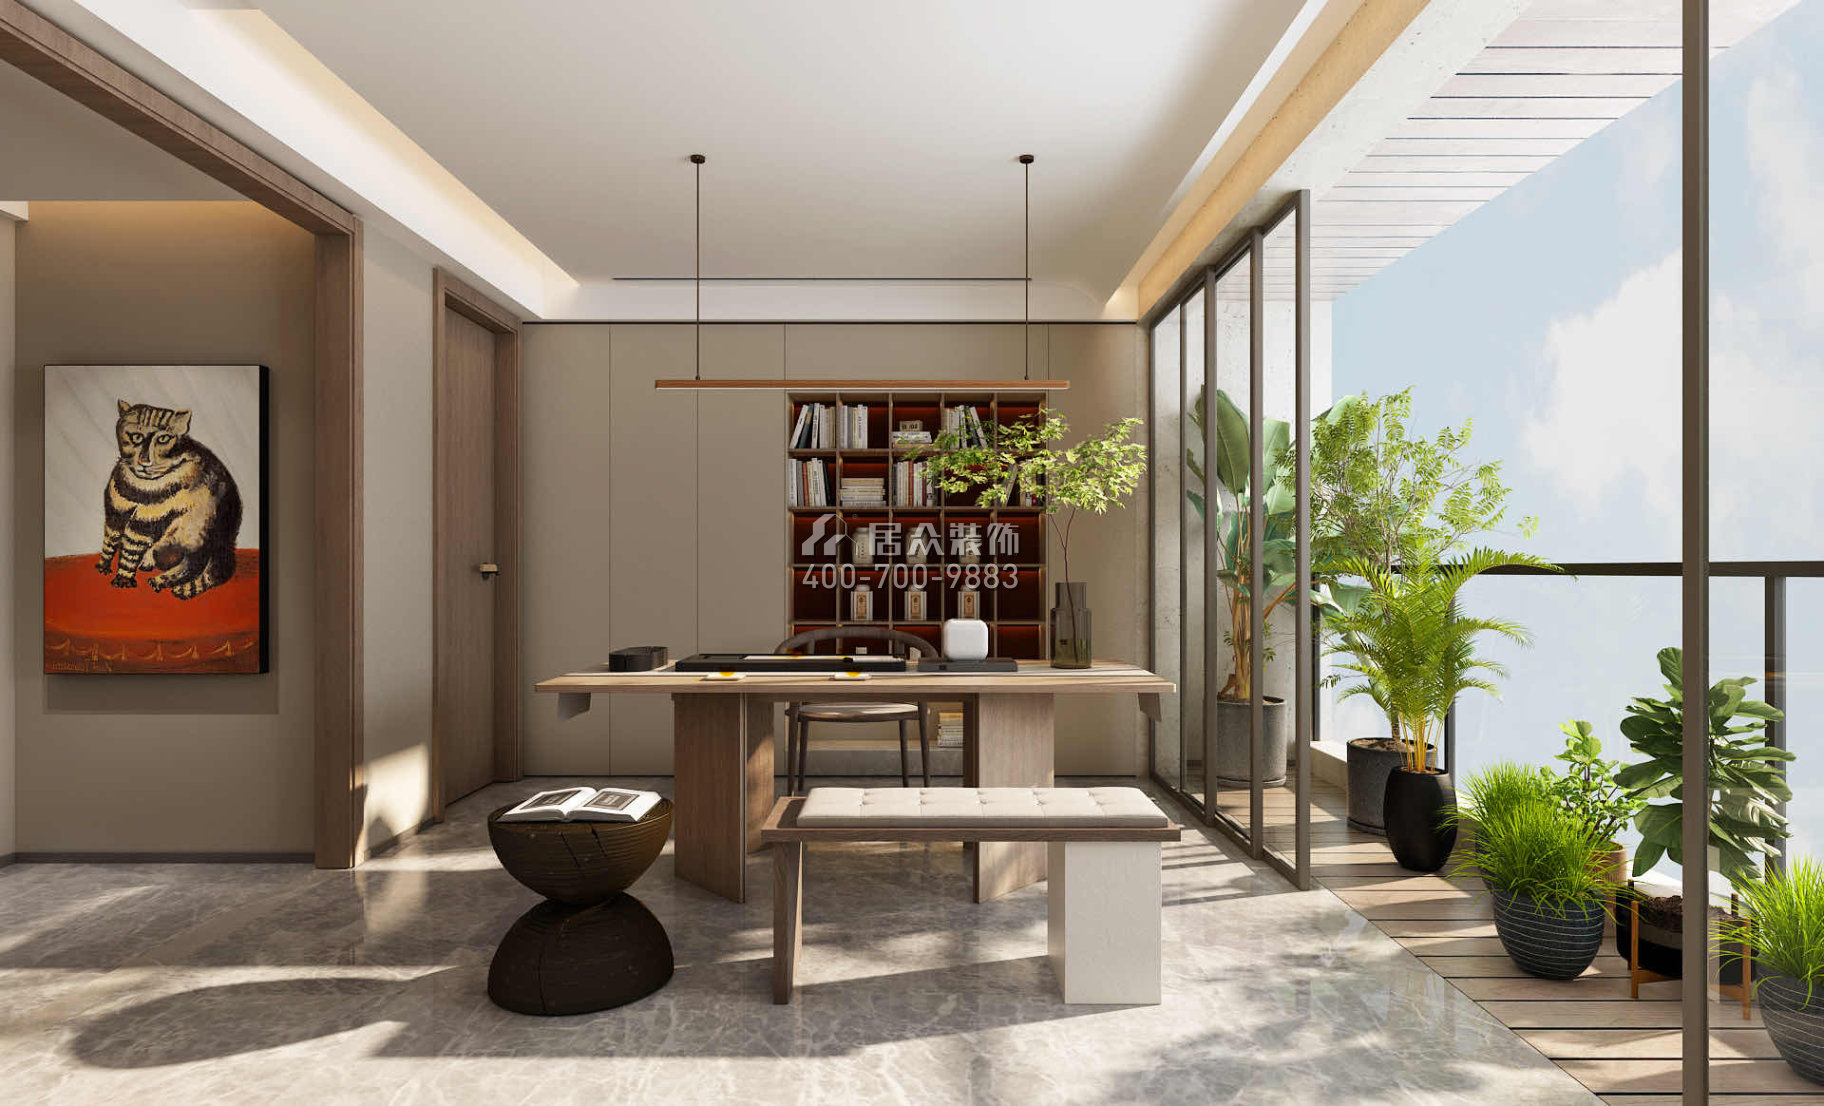 明珠國際300平方米現代簡約風格平層戶型茶室裝修效果圖